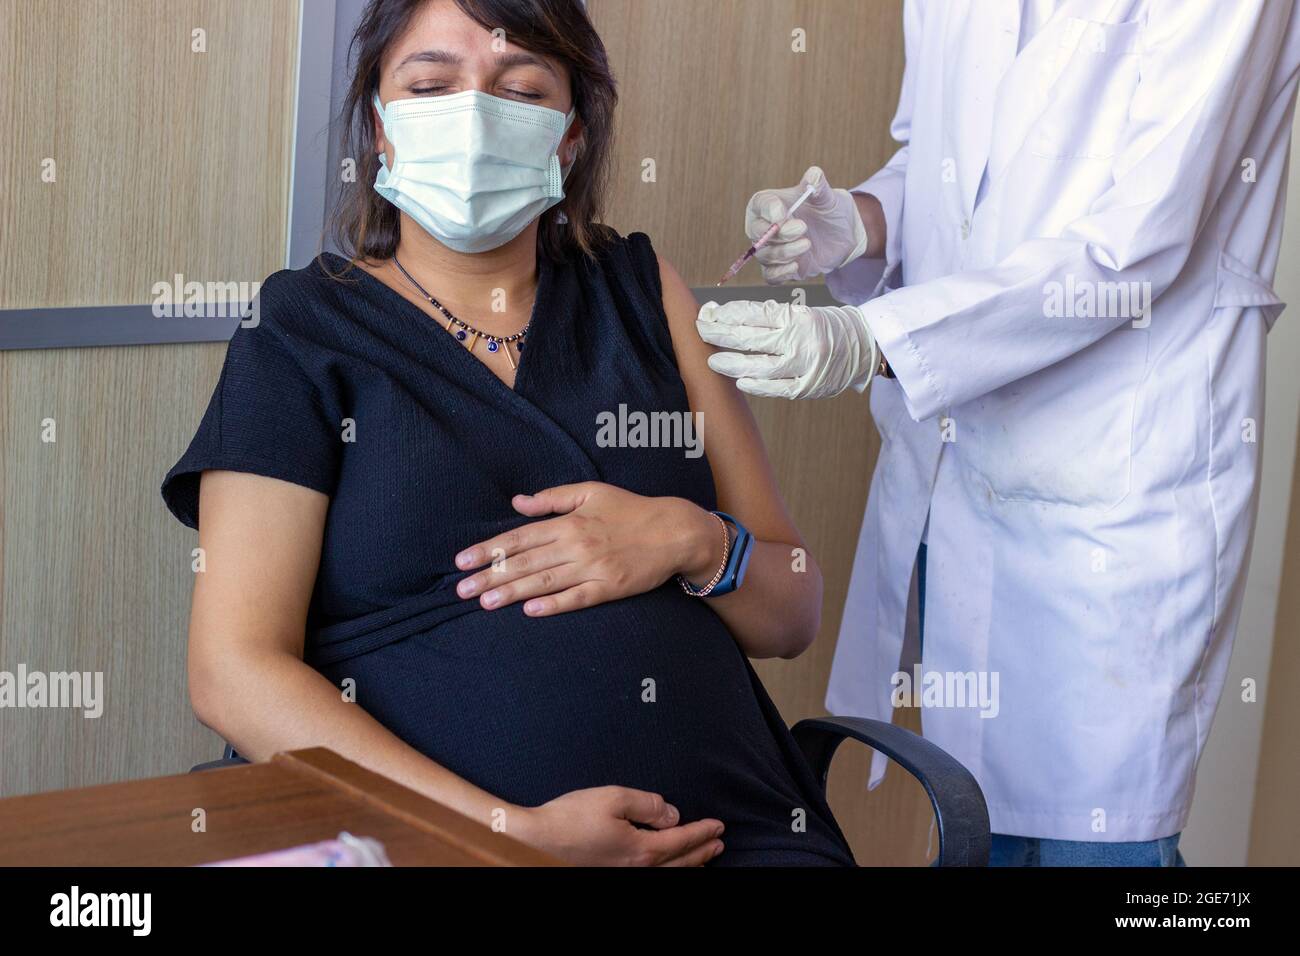 La femme enceinte se fait vacciner.Vaccin contre l'hépatite, la grippe, la diphtérie ou le covid.La femme avec enceinte évidente.Femme médecin ou infirmière main. Banque D'Images